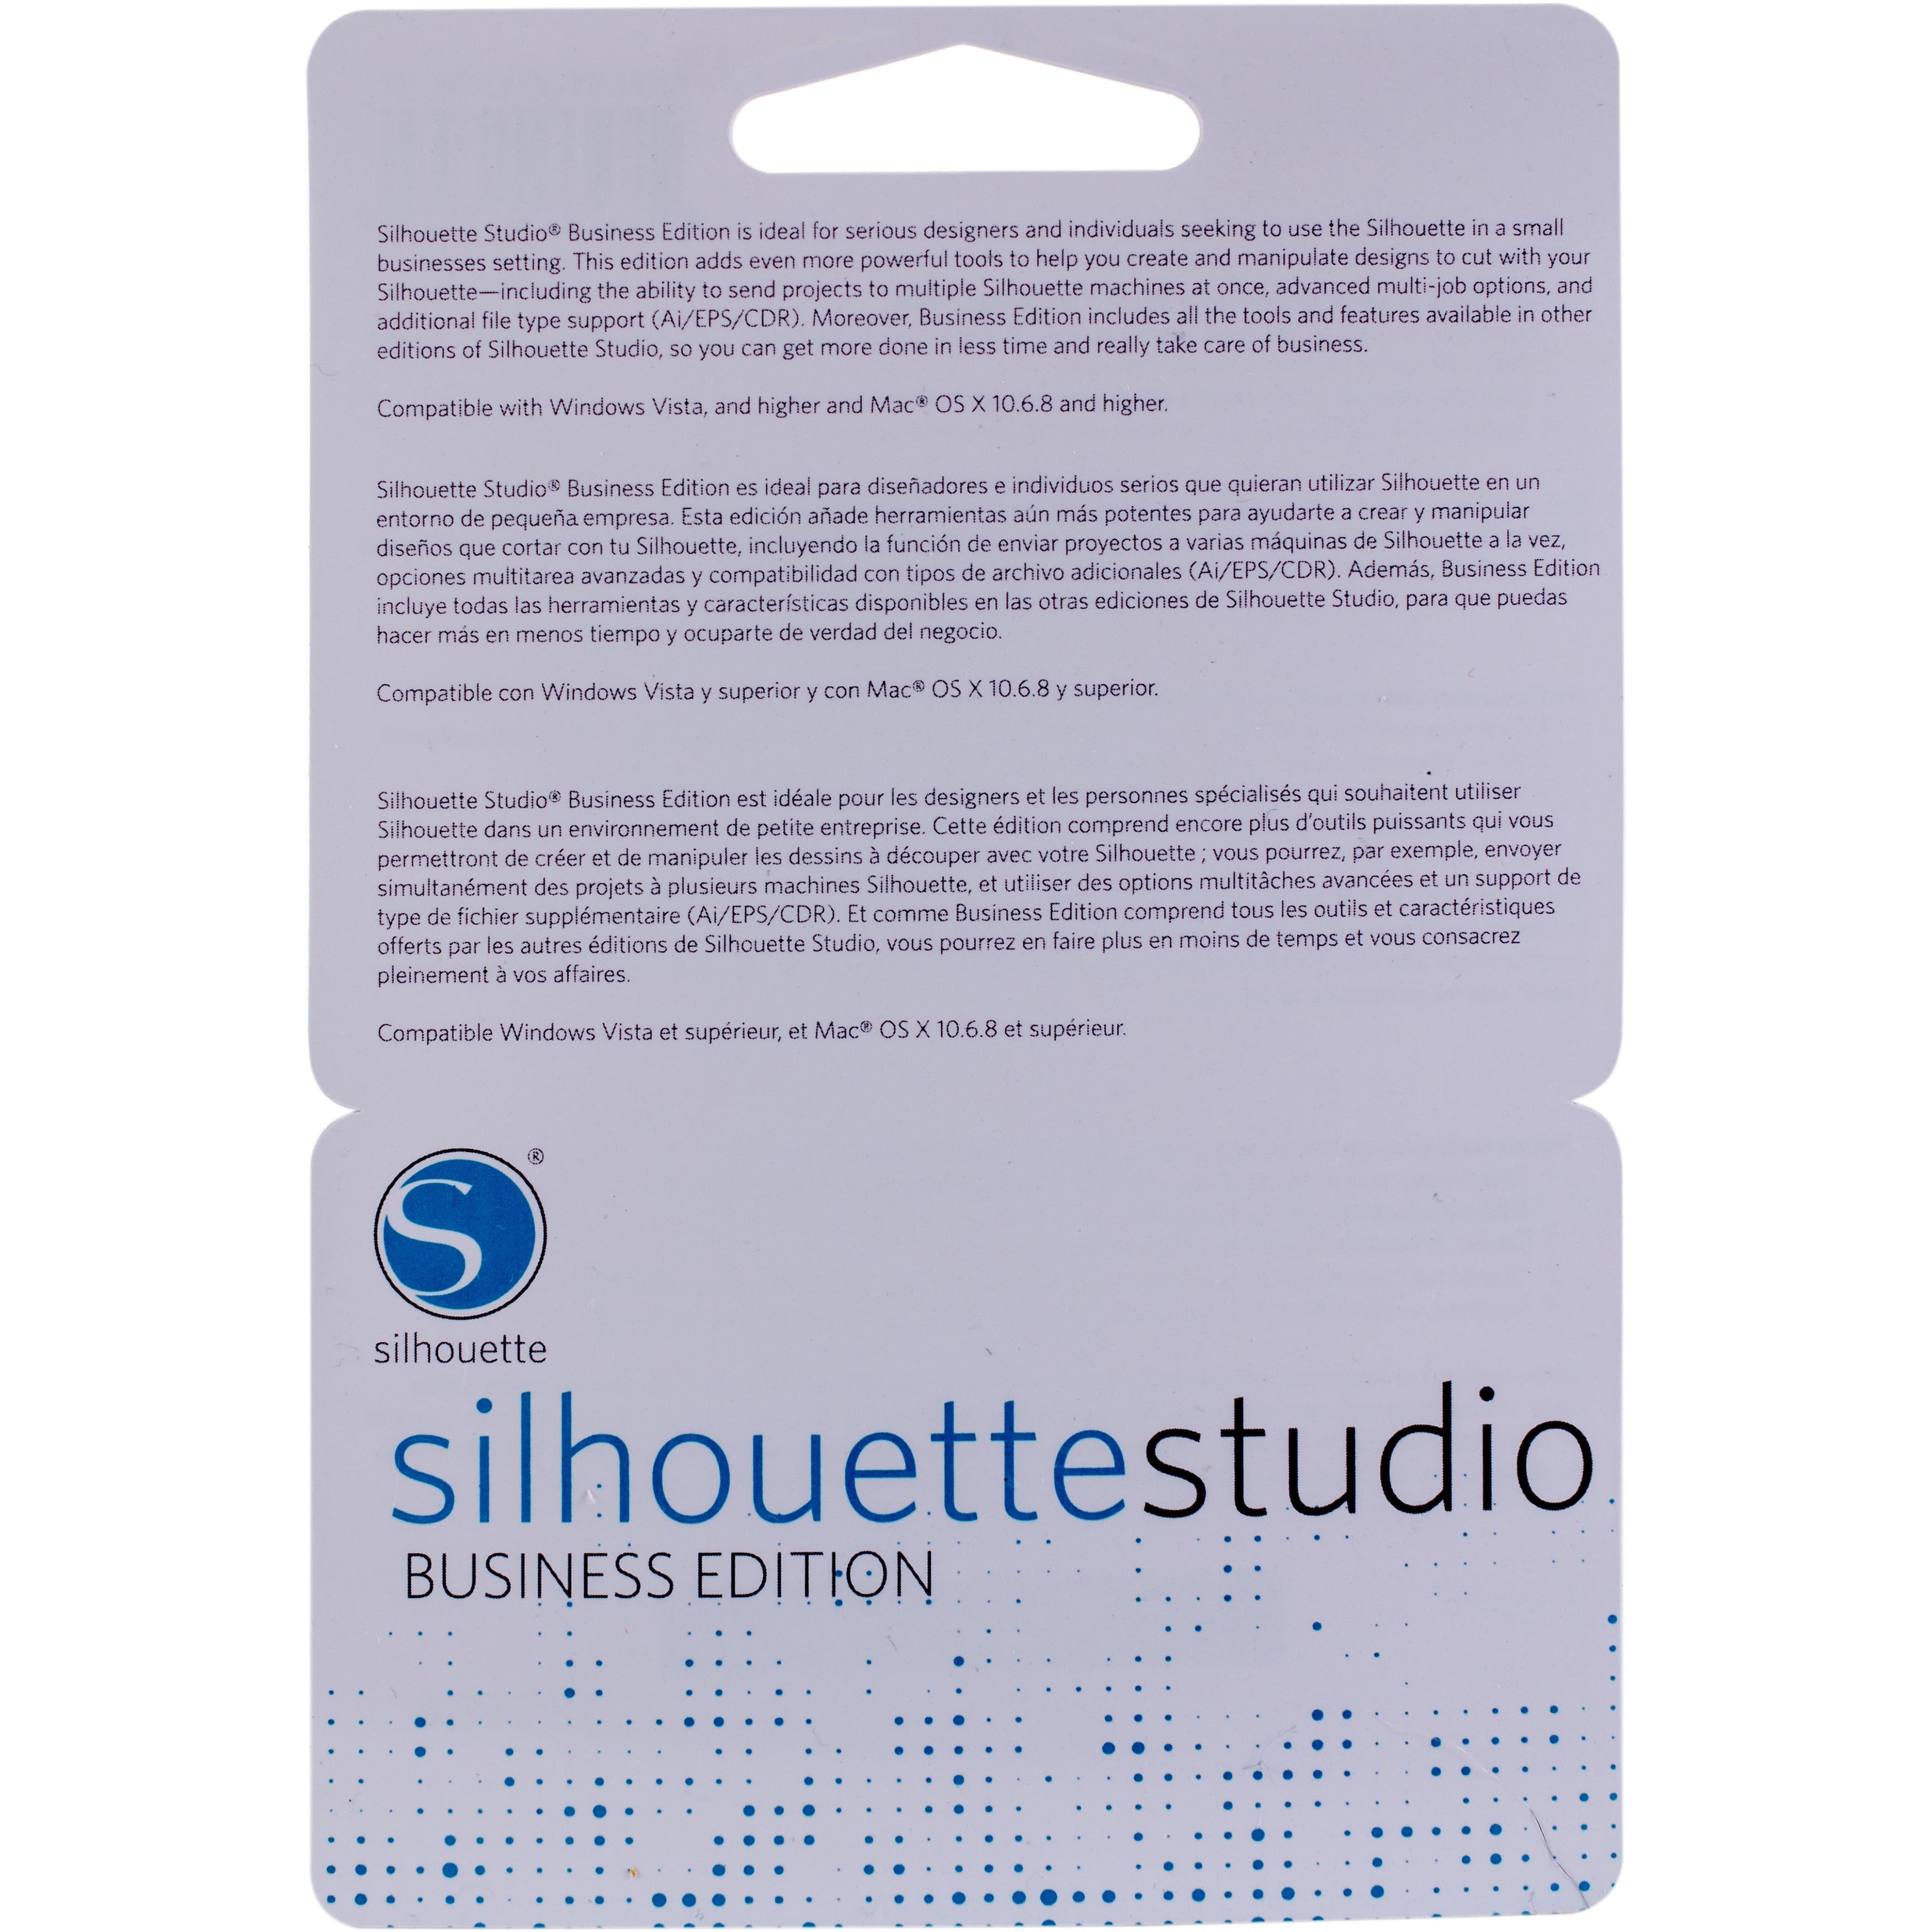 will silhouette studio business edition open ai files